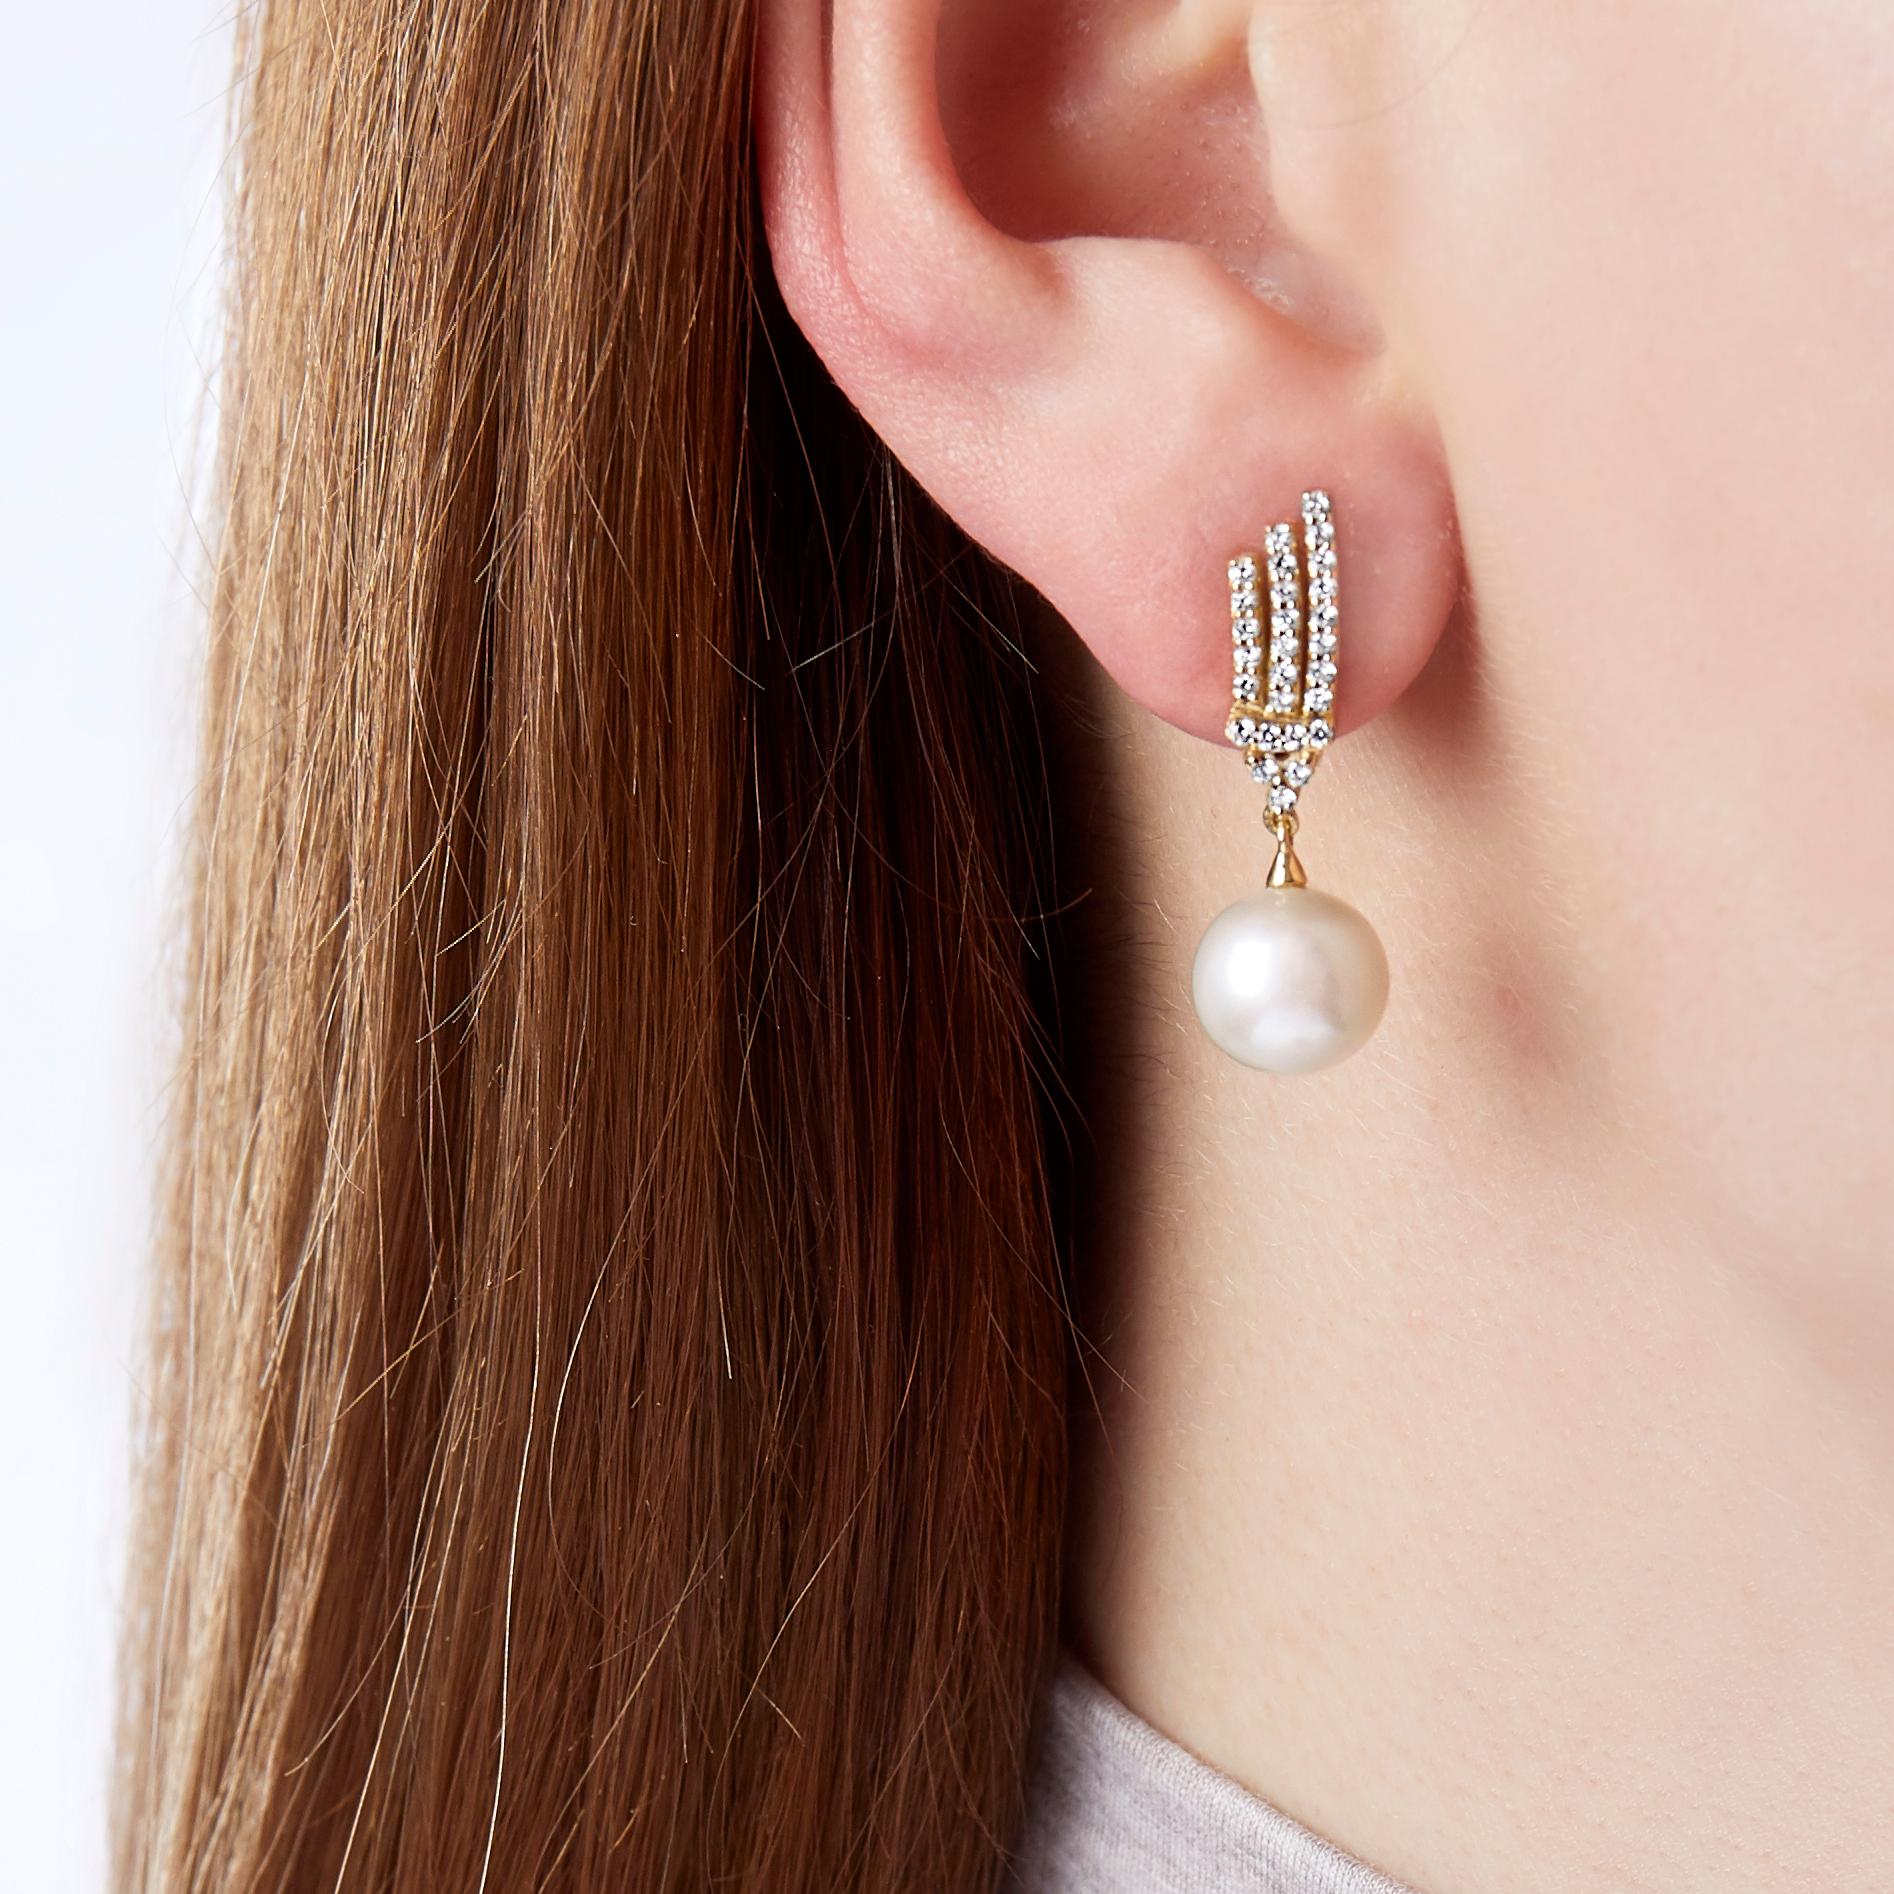 Ces élégantes boucles d'oreilles de Yoko London sont ornées de perles d'eau douce lumineuses et d'un motif complexe de diamants. Montées en or jaune 18 carats, ces boucles d'oreilles rappellent les boucles d'oreilles Art déco et ont été réalisées à